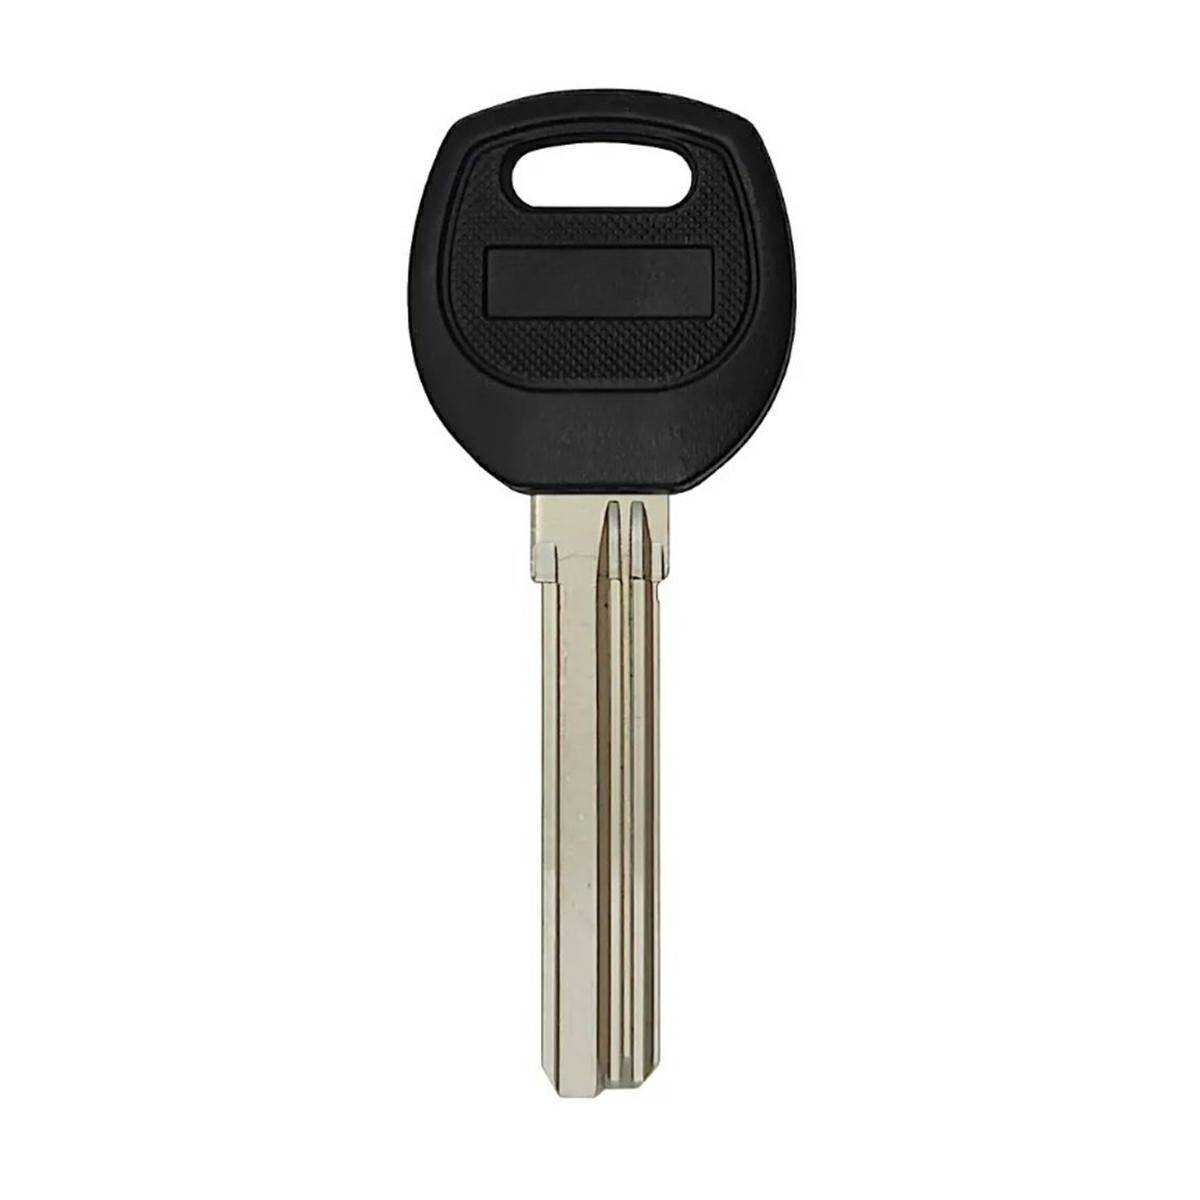 Chinese key 37mm x 8,7mm x 2,2mm